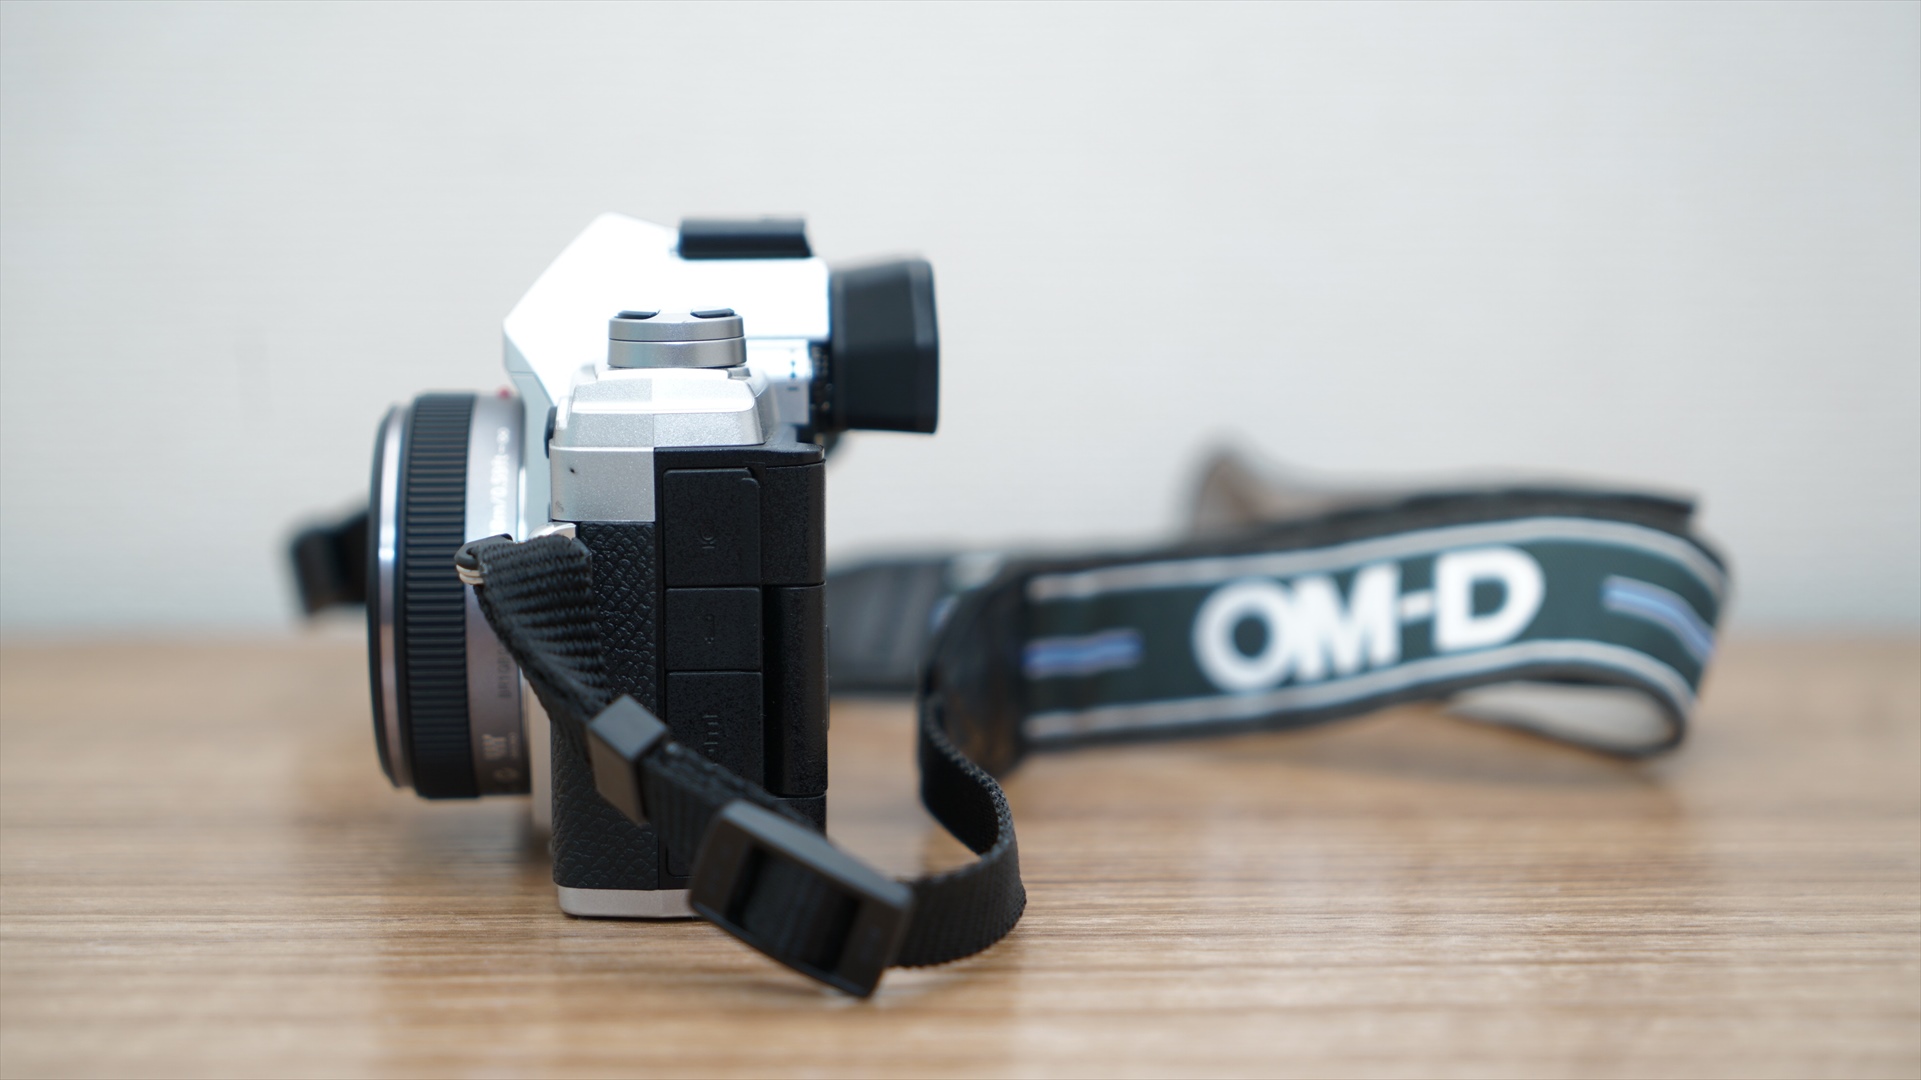 OMD-EM5-m3 + LUMIX G 14mm / F2.5 ASPH.